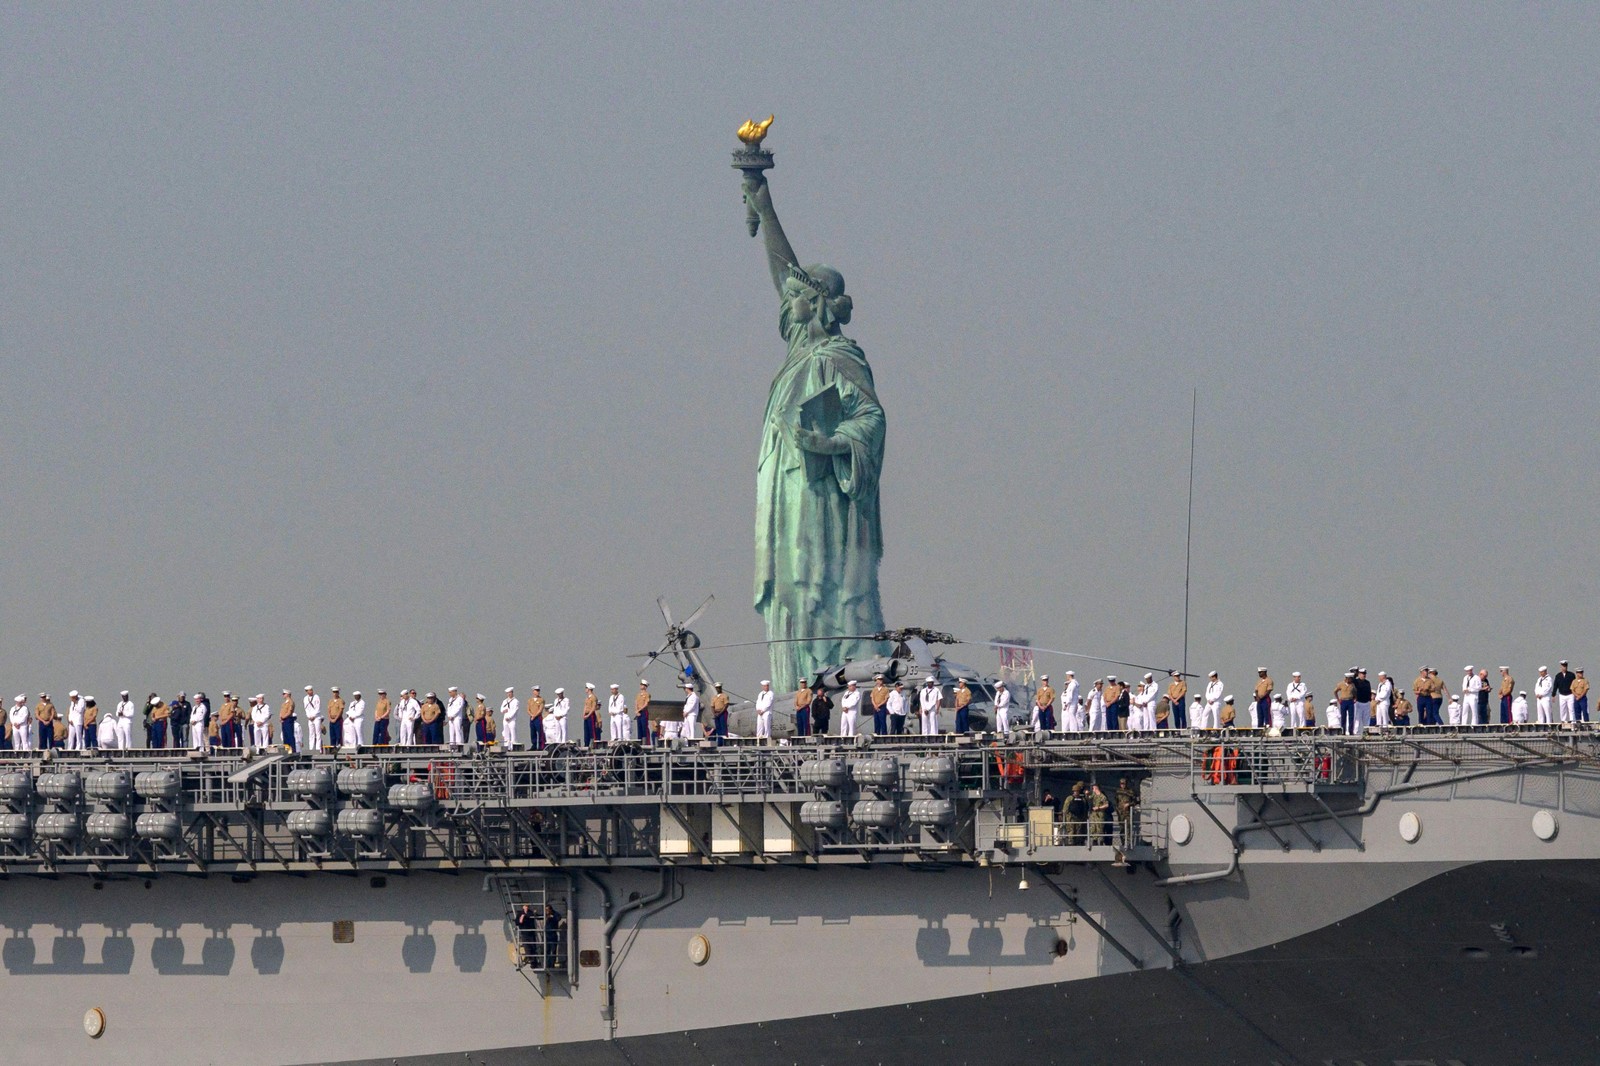 Navio passa pela Estátua da Liberdade durante a Fleet Week no porto de Nova York  — Foto: ANGELA WEISS / AFP